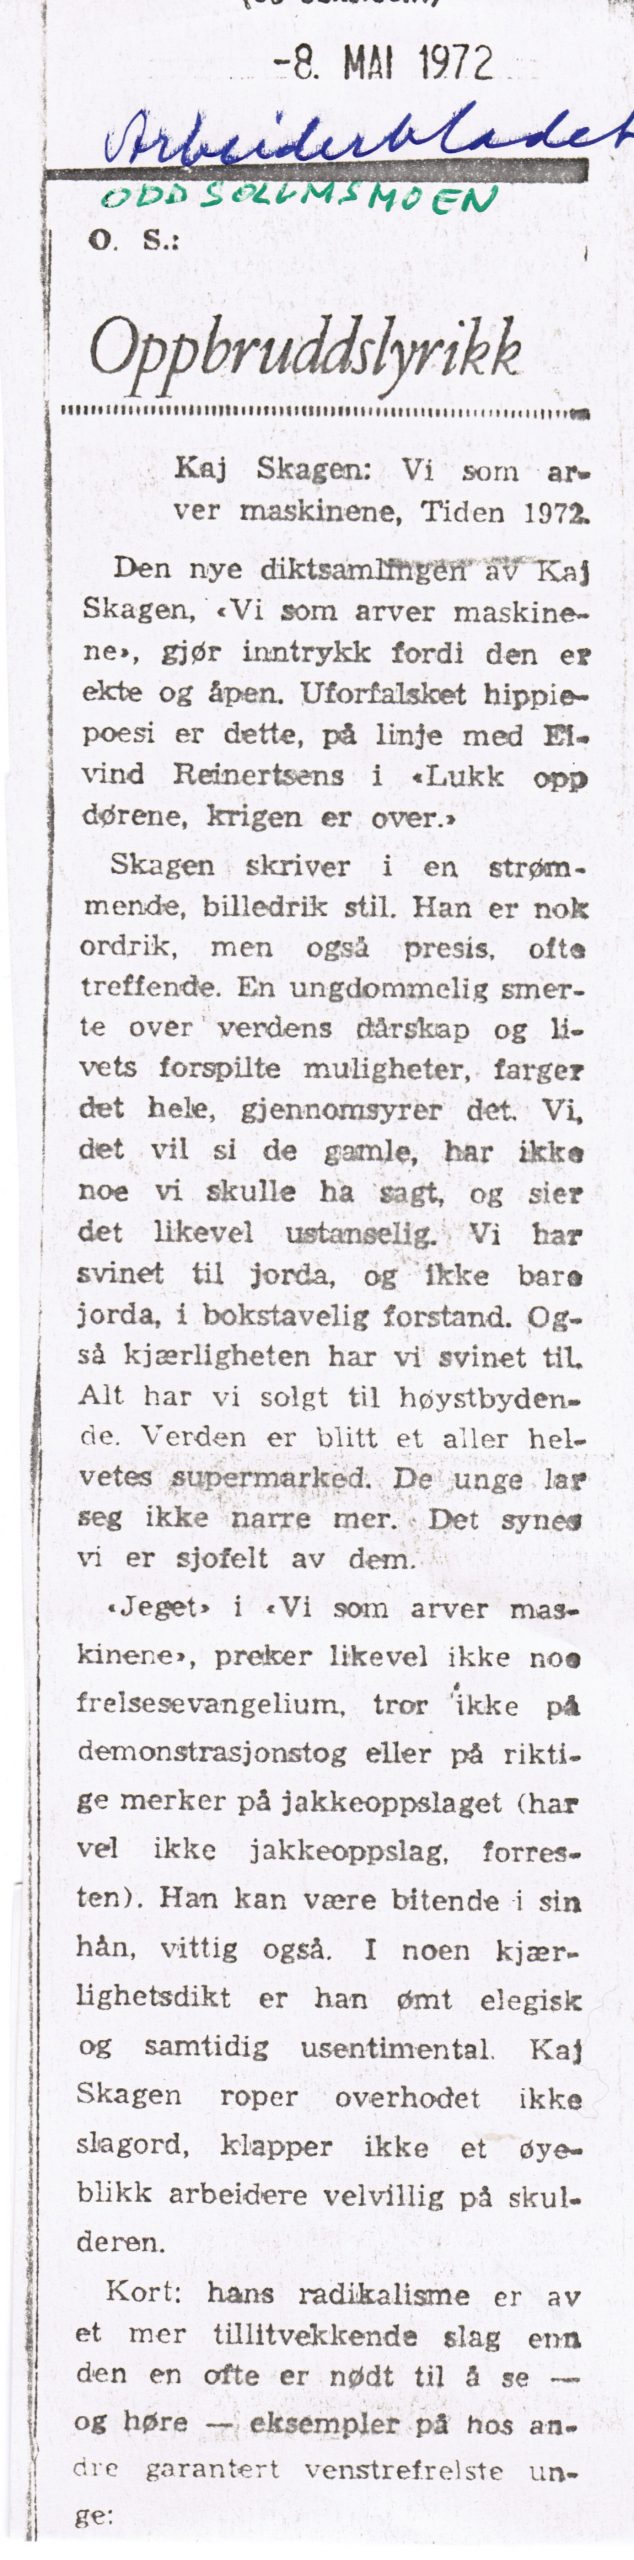 Utklipp fra Arbeiderbladet mai 1972